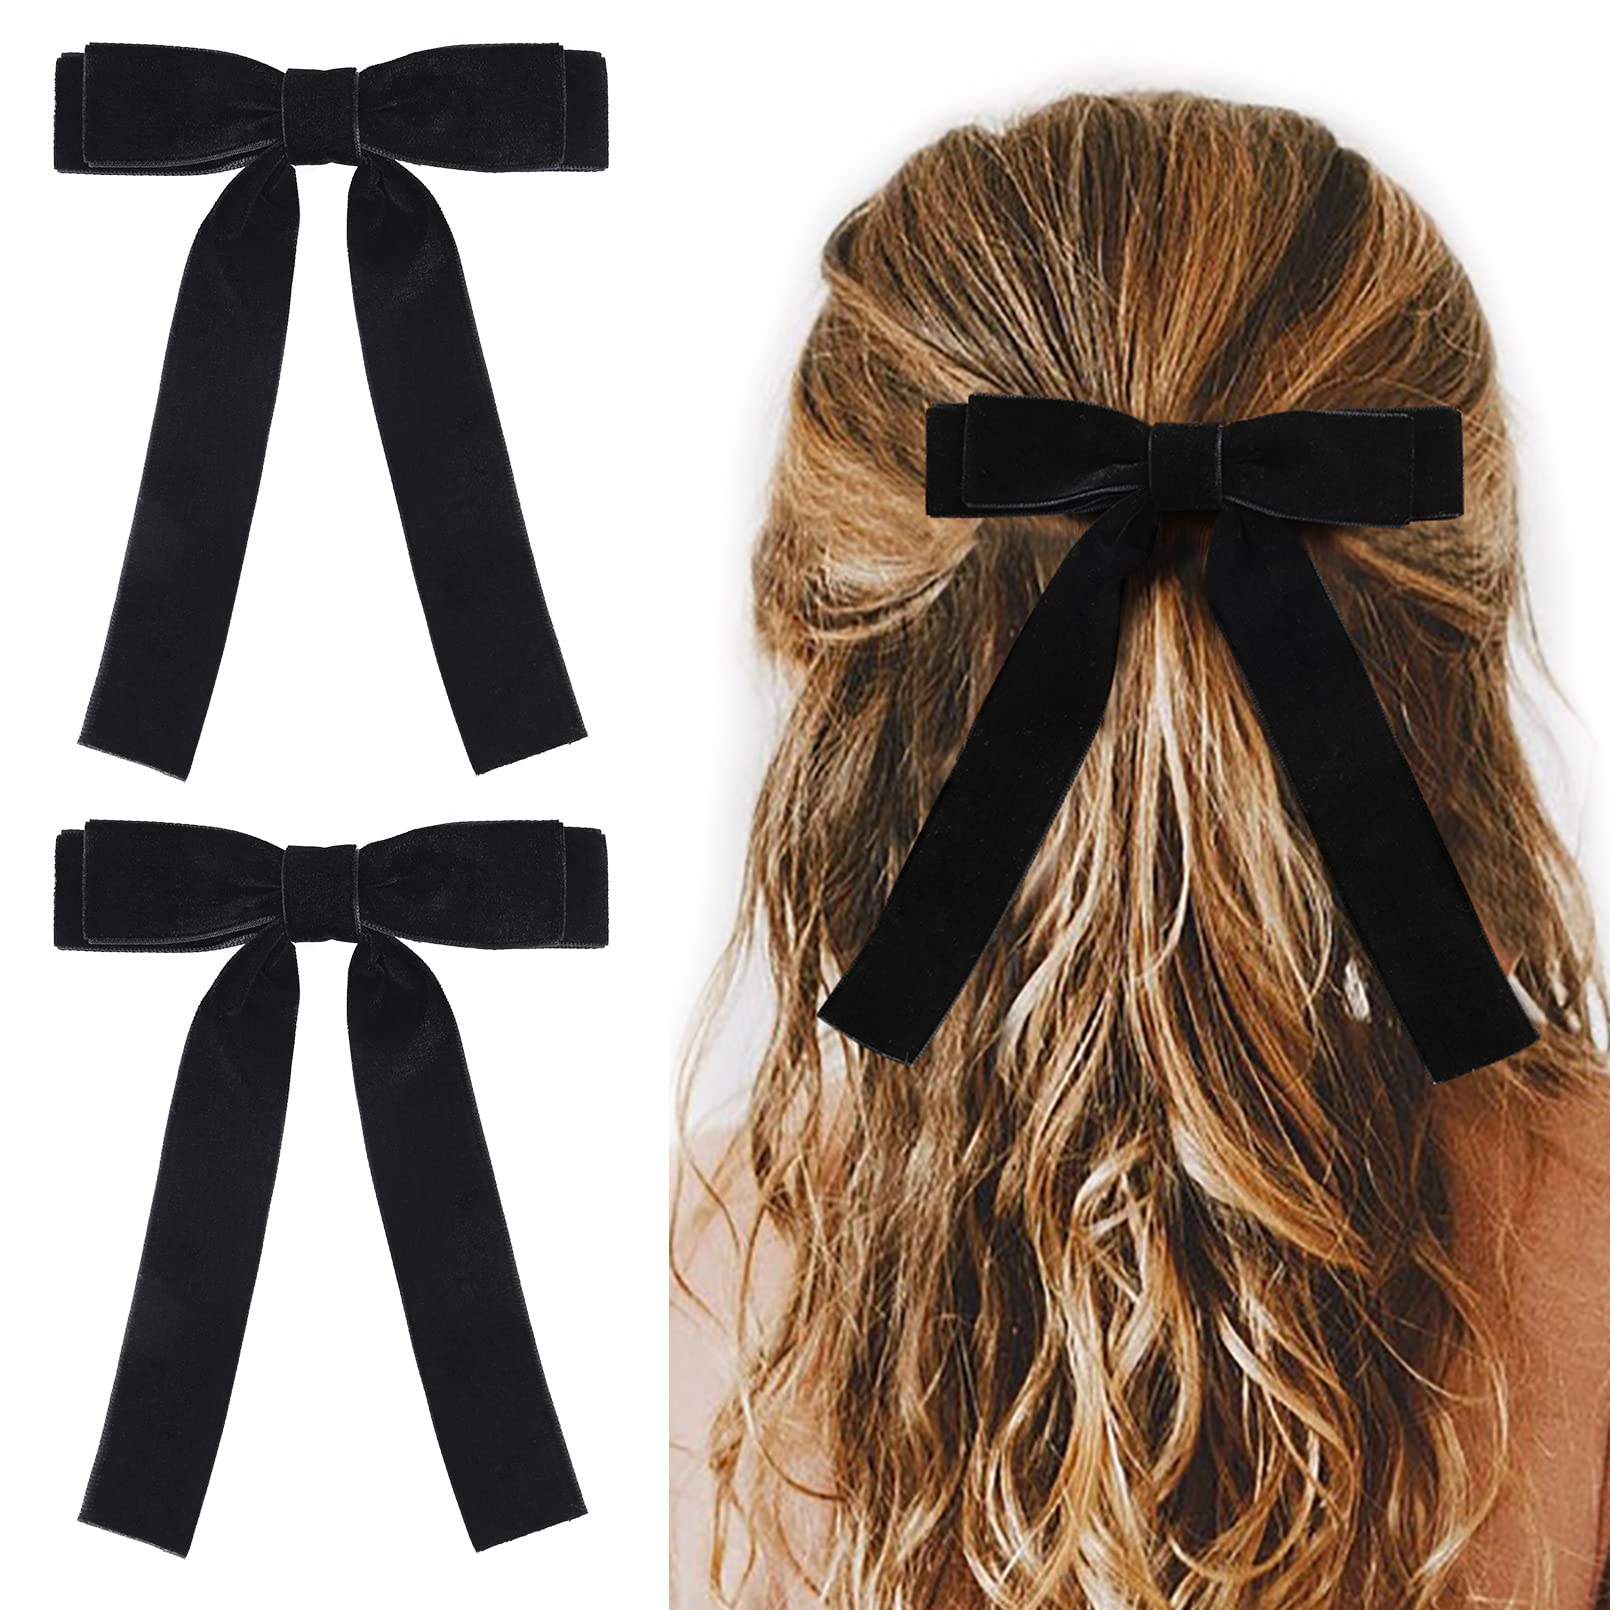 Velvet Hair Bow - 2pcs Hair Bows For Women Girls Black Bows Hair